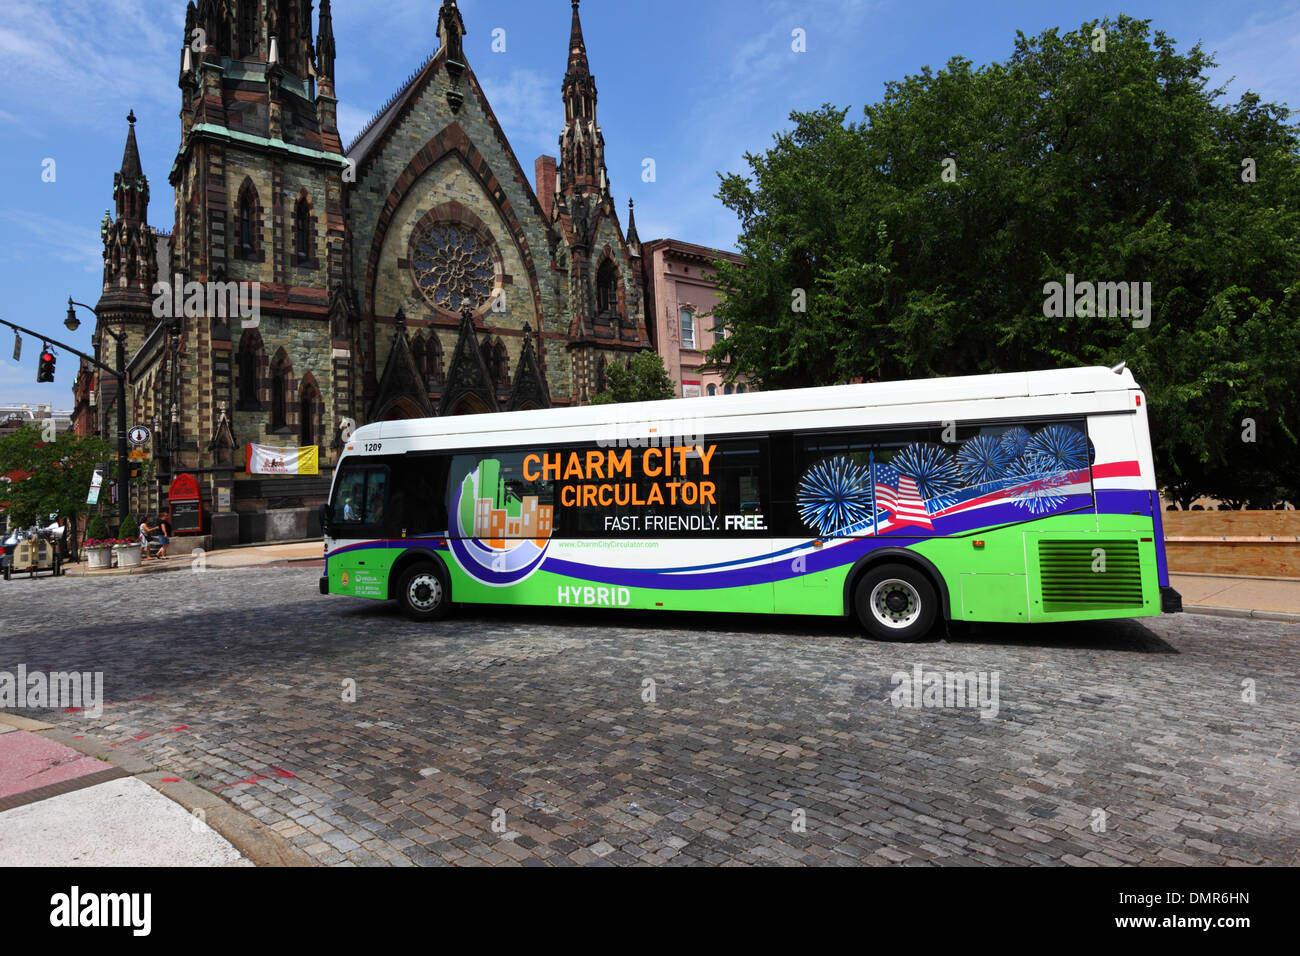 Il fascino della città libera del circolatore bus pubblico che utilizza combustibile ibrido la tecnologia ha reso da Orion International, Baltimore, Maryland, Stati Uniti d'America Foto Stock